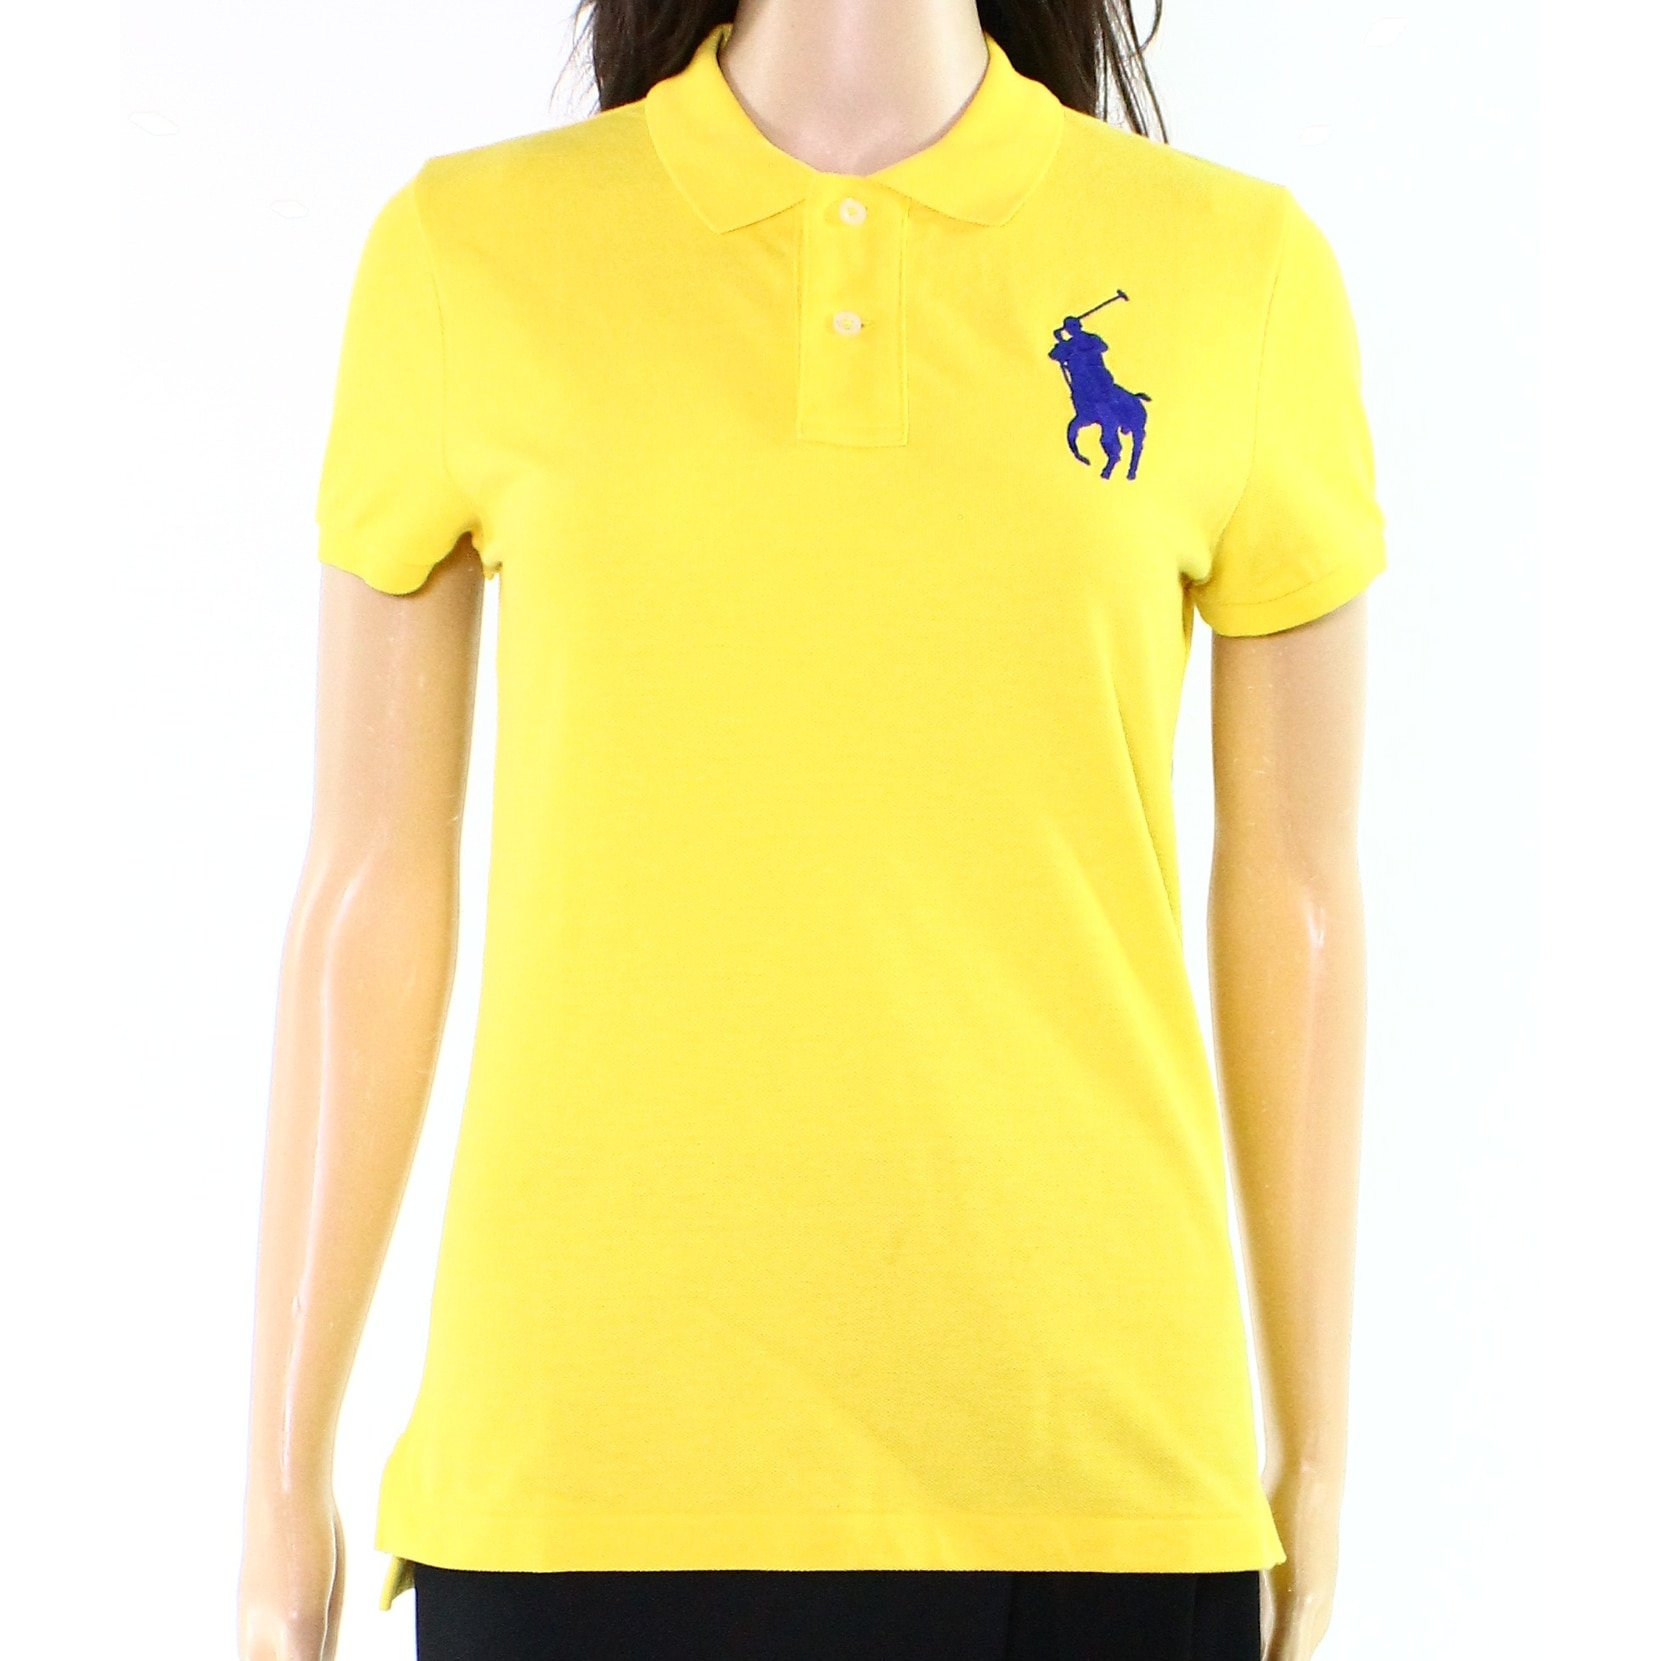 womens yellow ralph lauren polo shirt